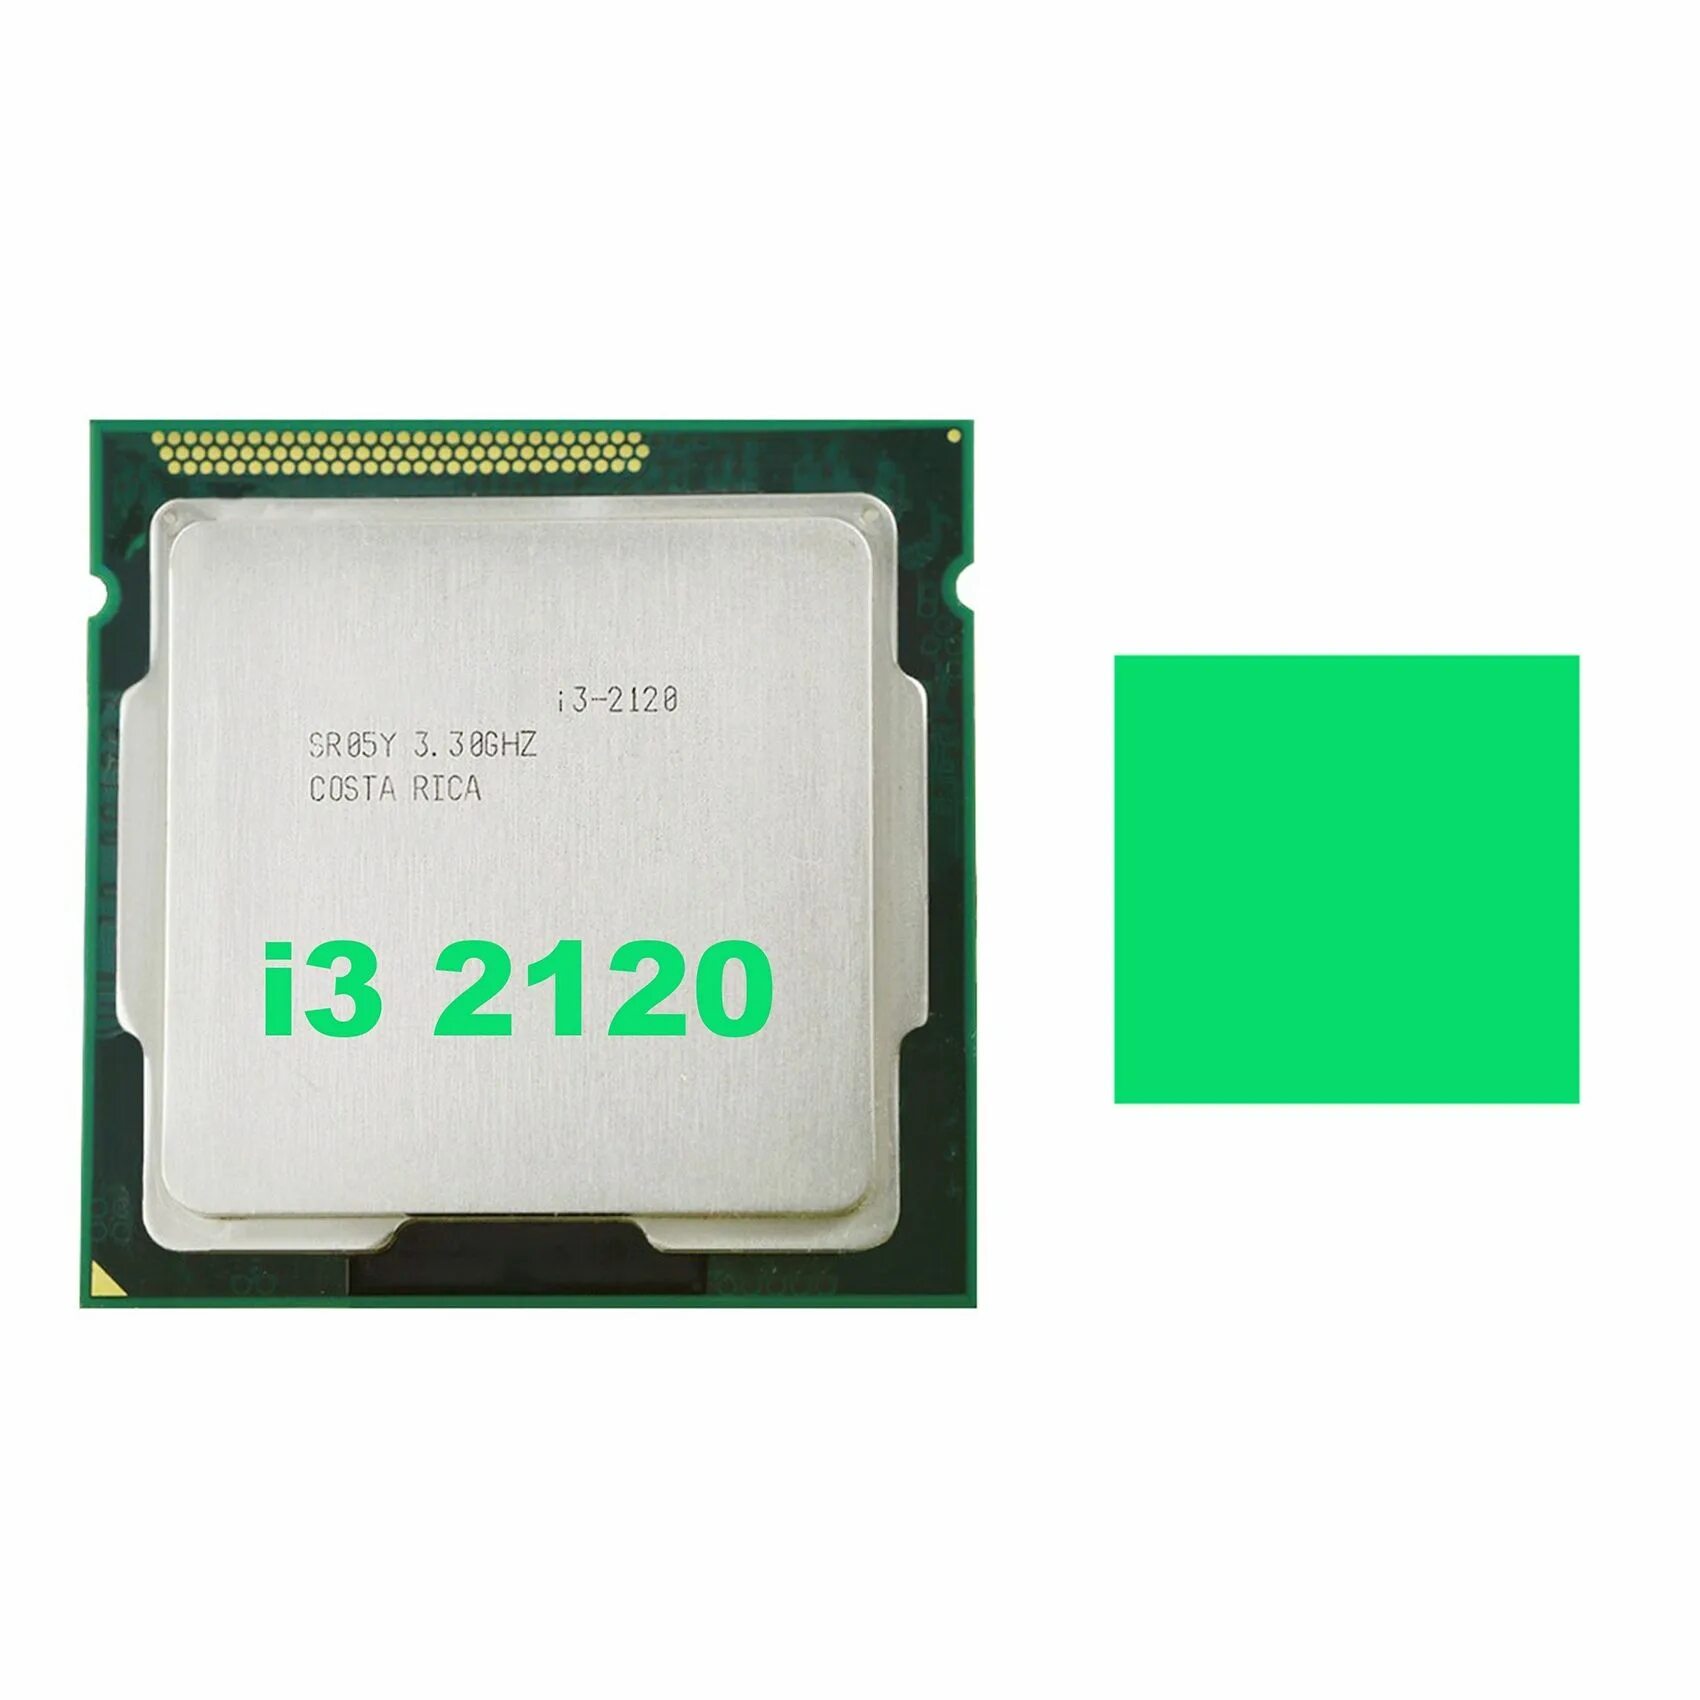 2120 сокет. Процессор: Intel Core i3 2120, 3.3 ГГЦ;. Процессор Intel Core i3 2120 CPU 3.30GHZ. Intel(r) Core(TM) i3-2120 CPU @ 3.30GHZ 3.30 GHZ. 1155 Процессоры.